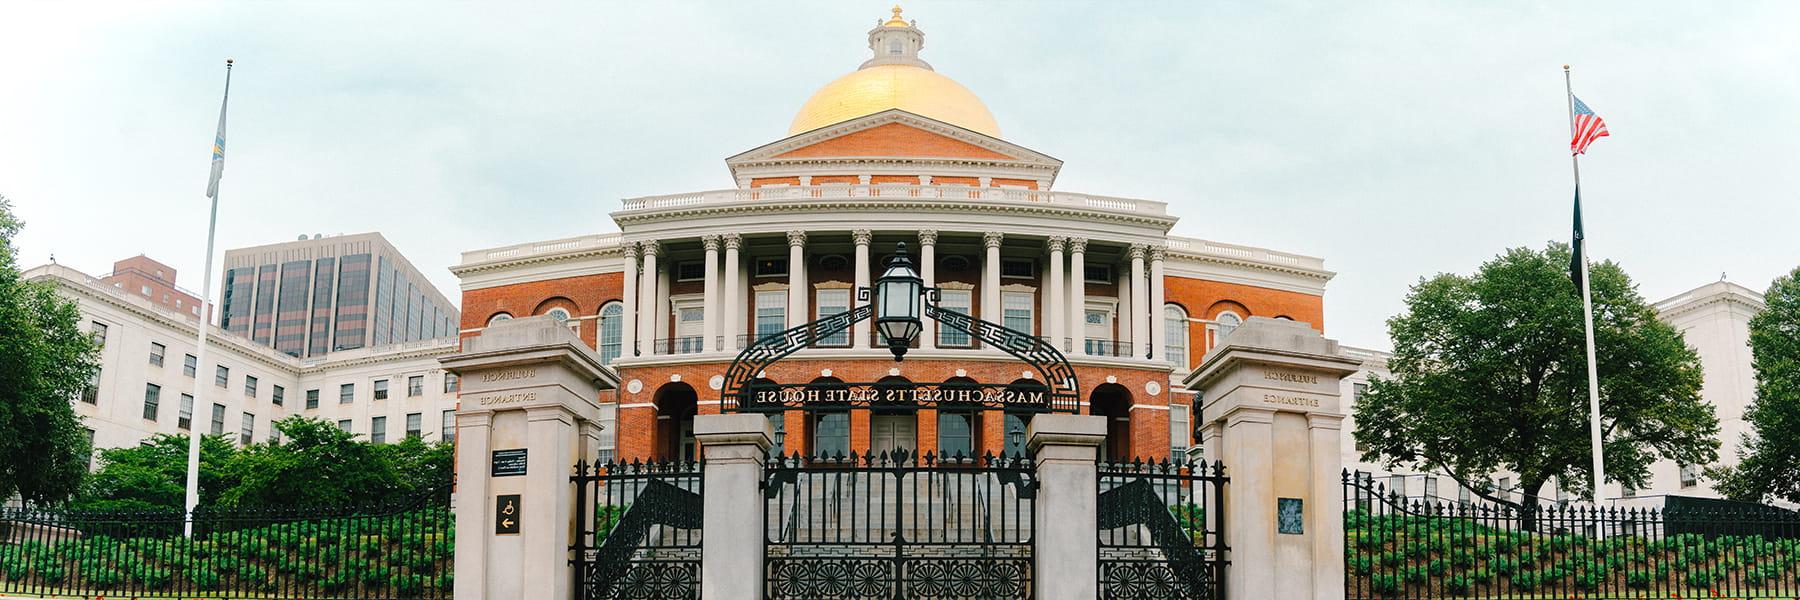 波士顿的马萨诸塞州议会大厦.